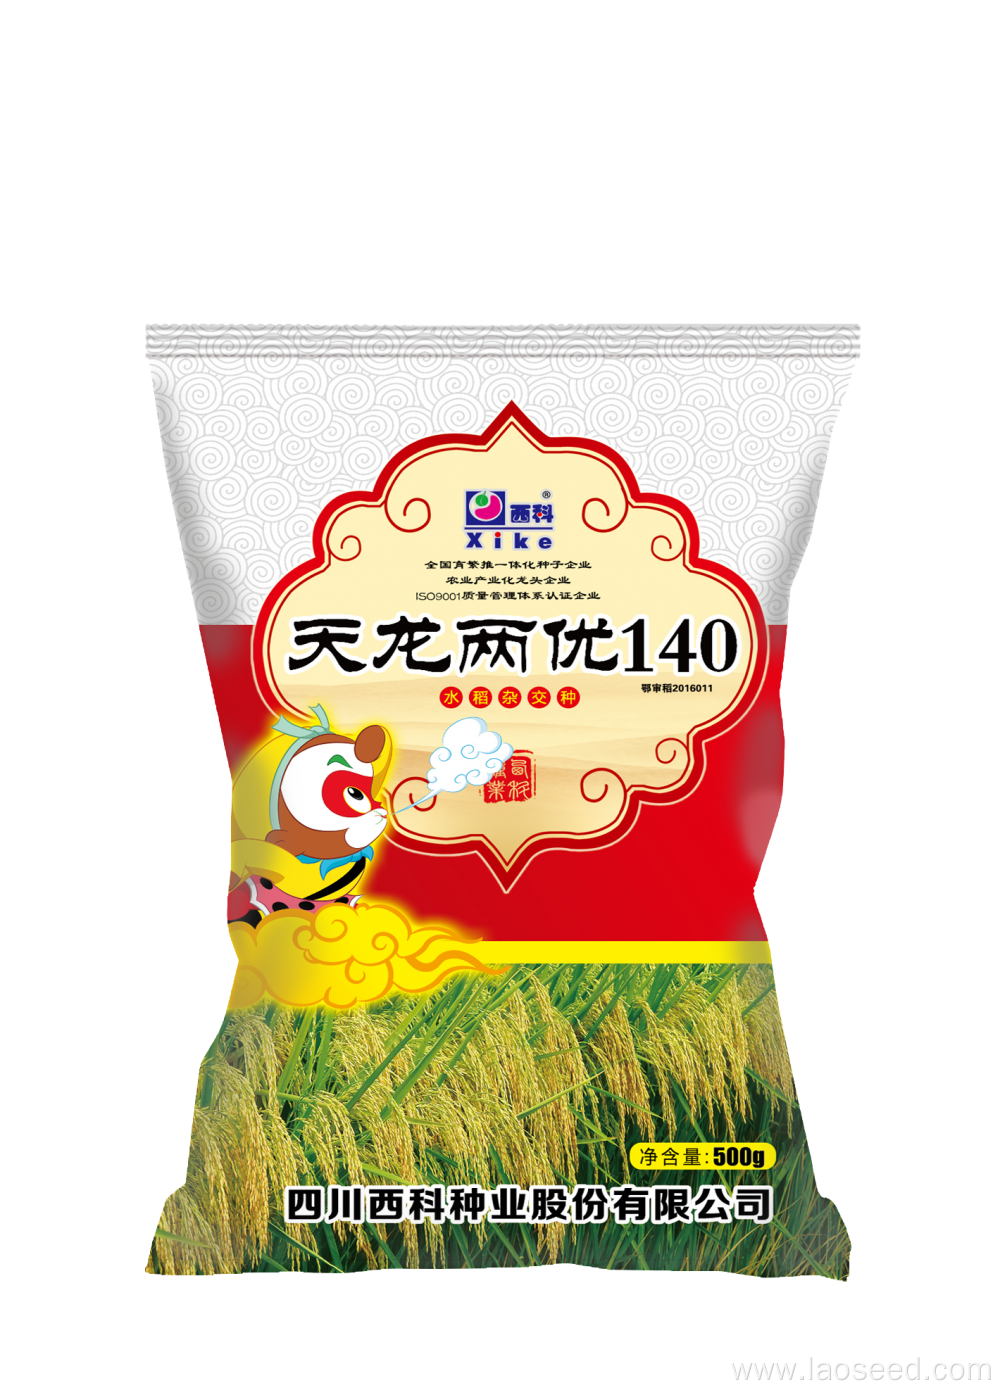 Tianlong Liangyou 140 Rice Seed